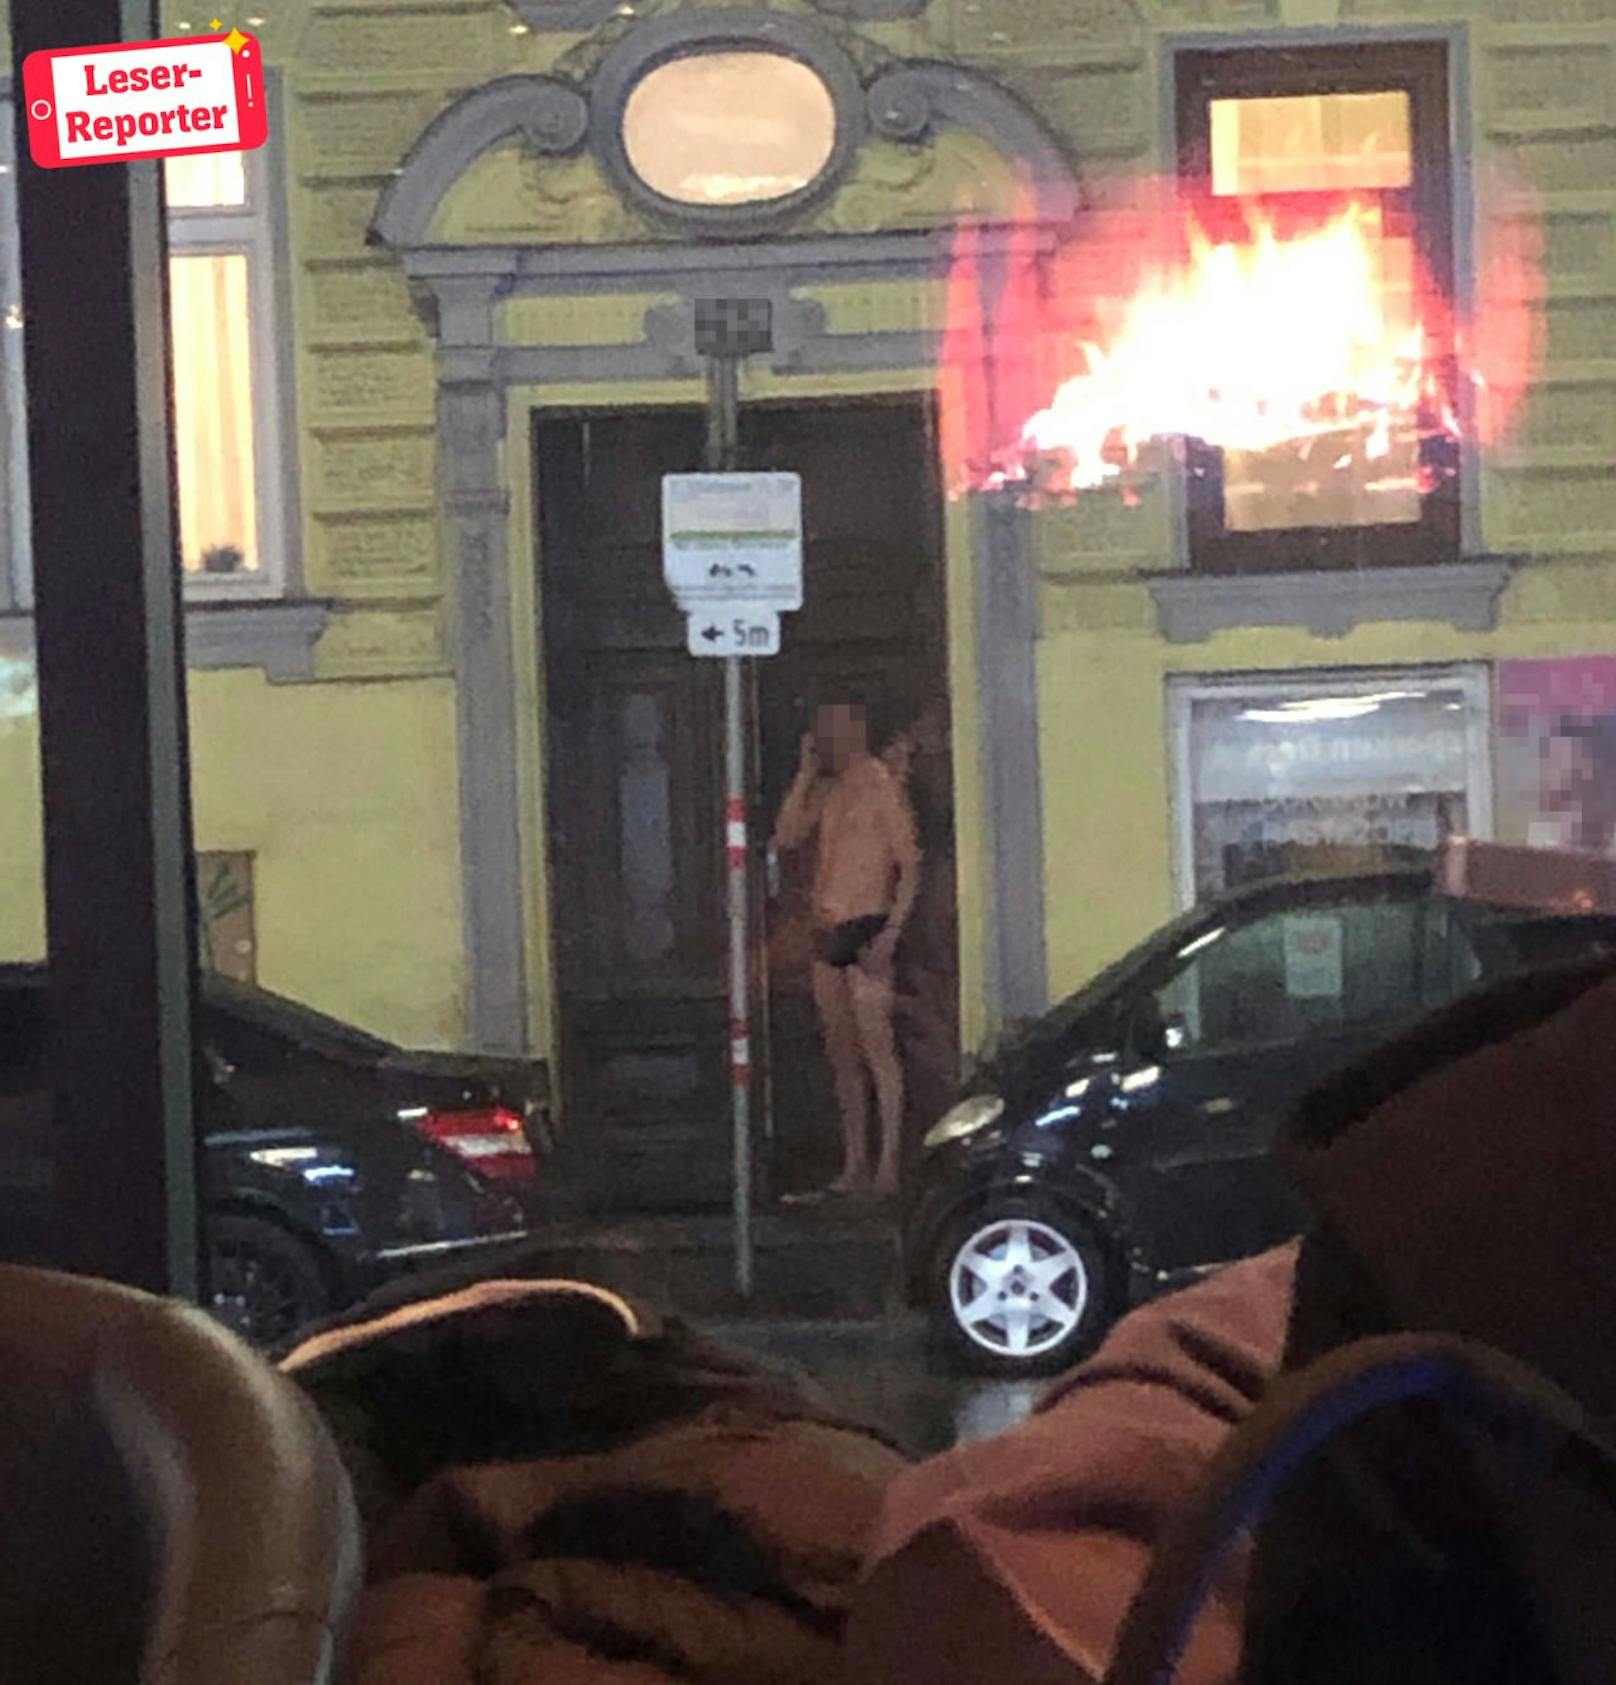 Lokalgäste bemerkten den Mann in Unterhose mitten im Regen auf der Straße.